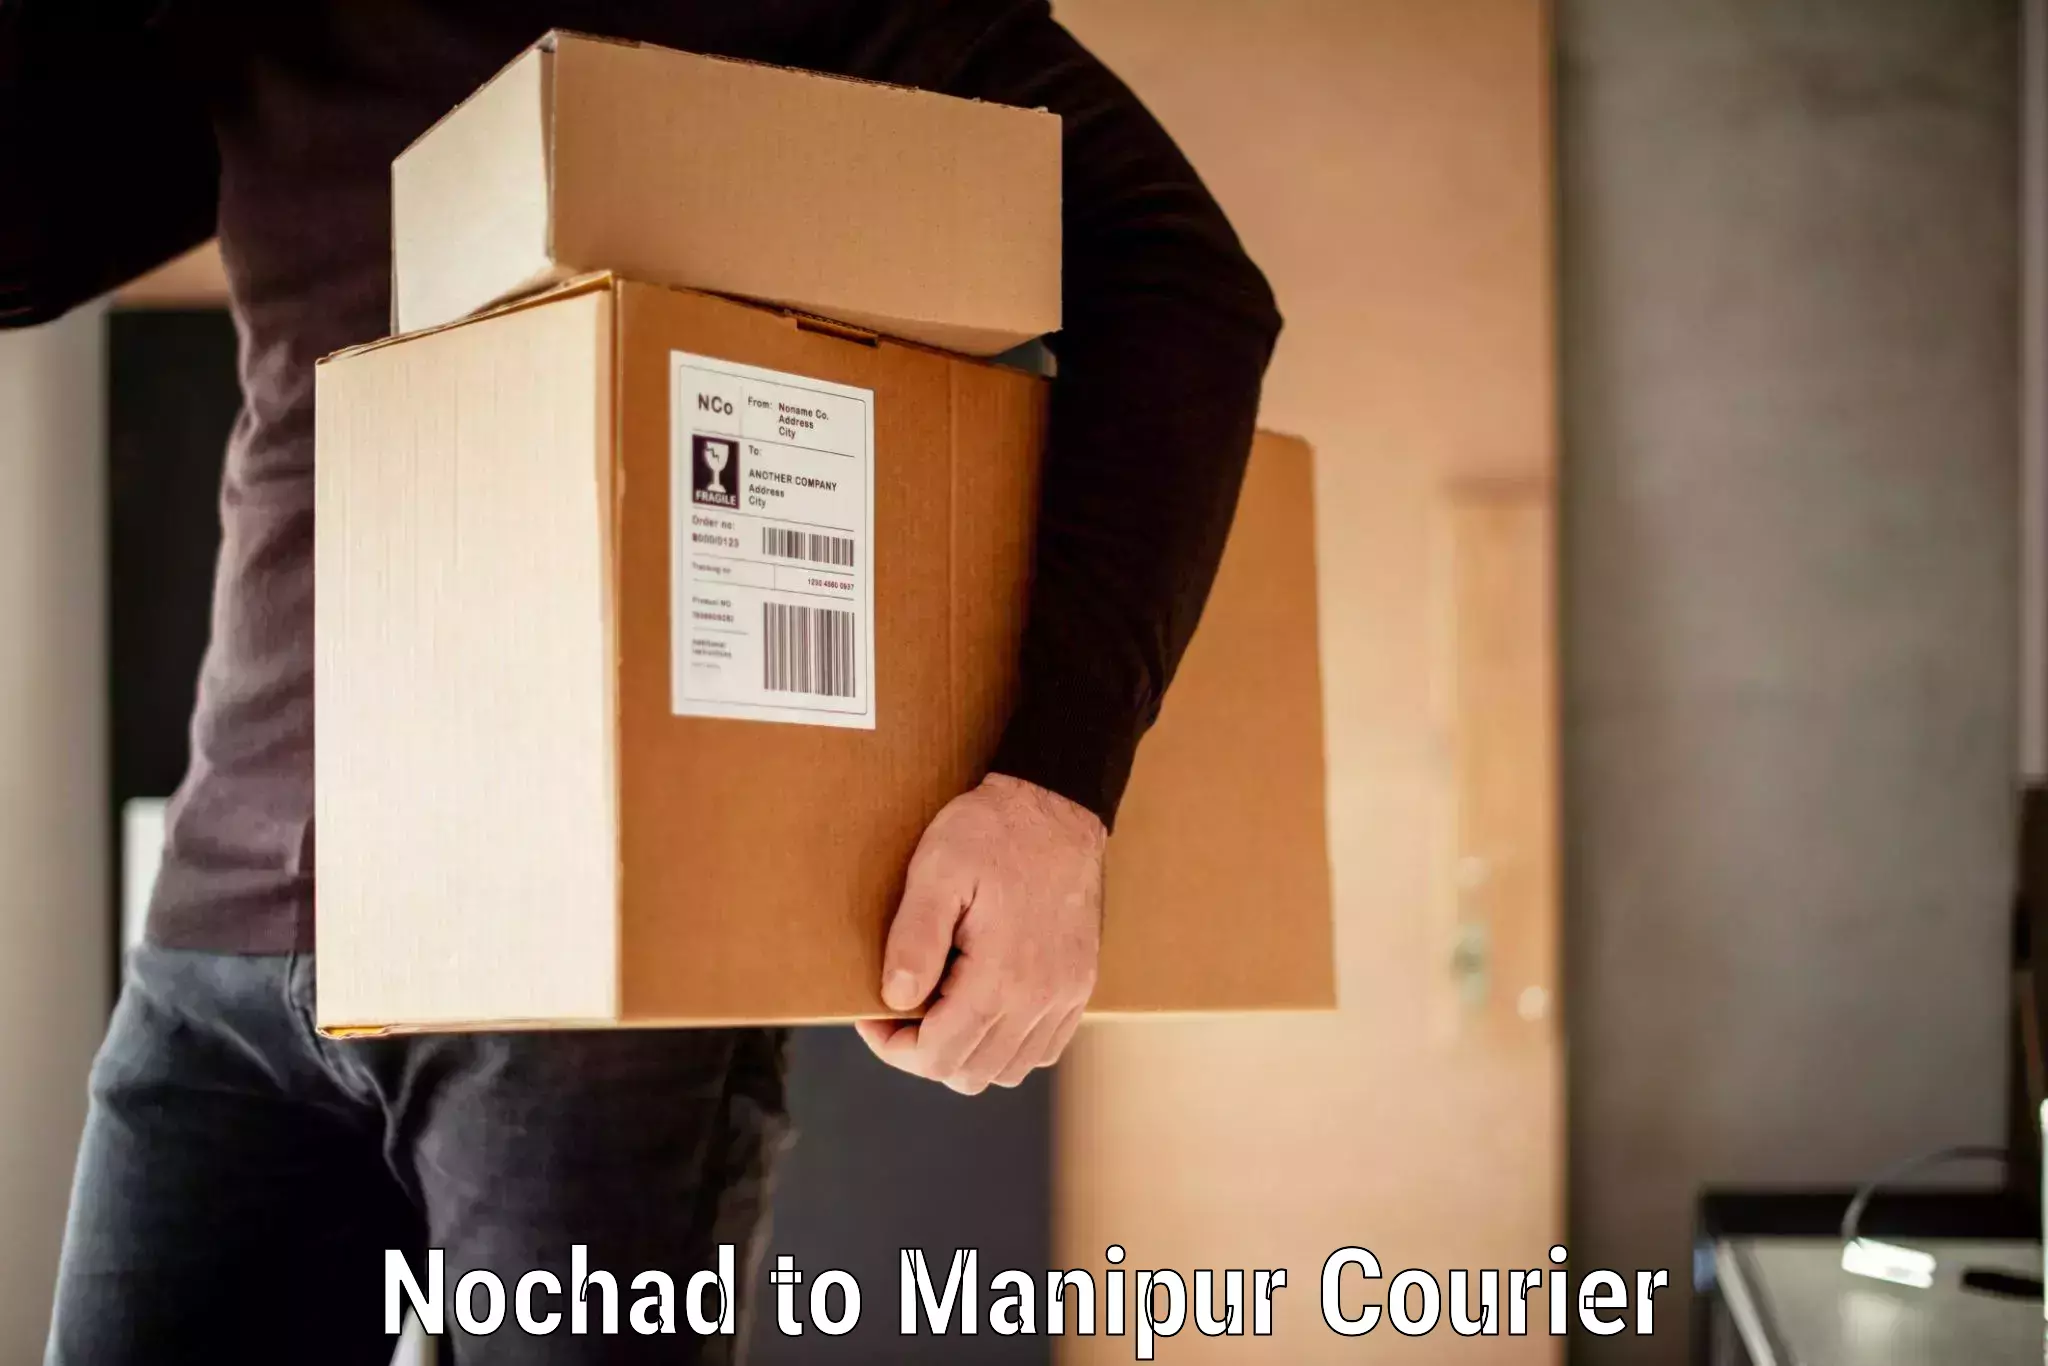 Baggage transport scheduler Nochad to Manipur